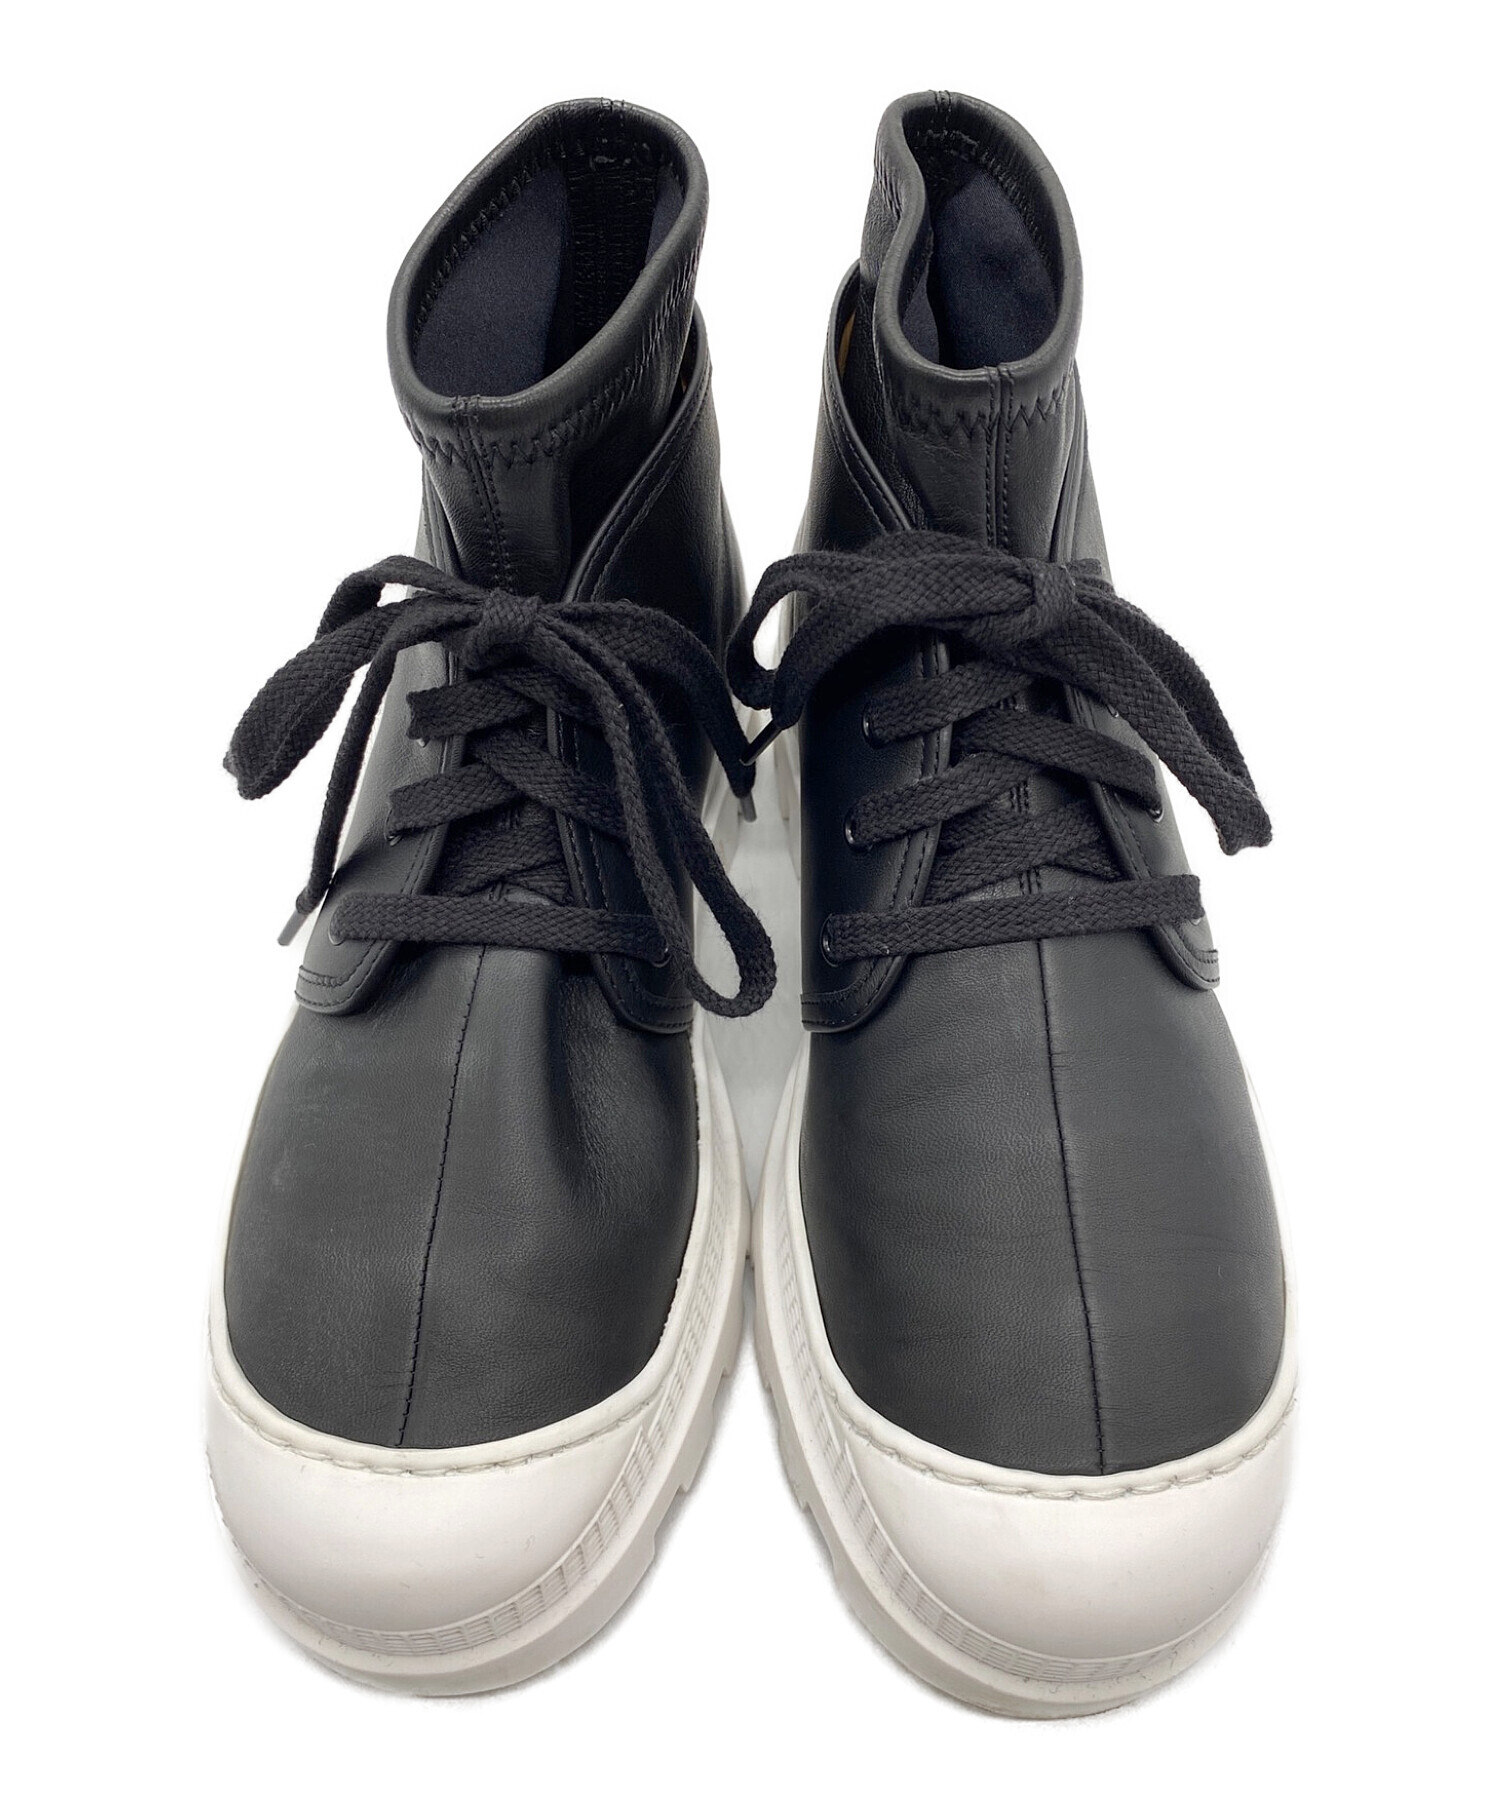 新品/37 LOEWE ロエベ コンバットブーツ ブーツ ブラック × ホワイト付属品保存袋2点箱